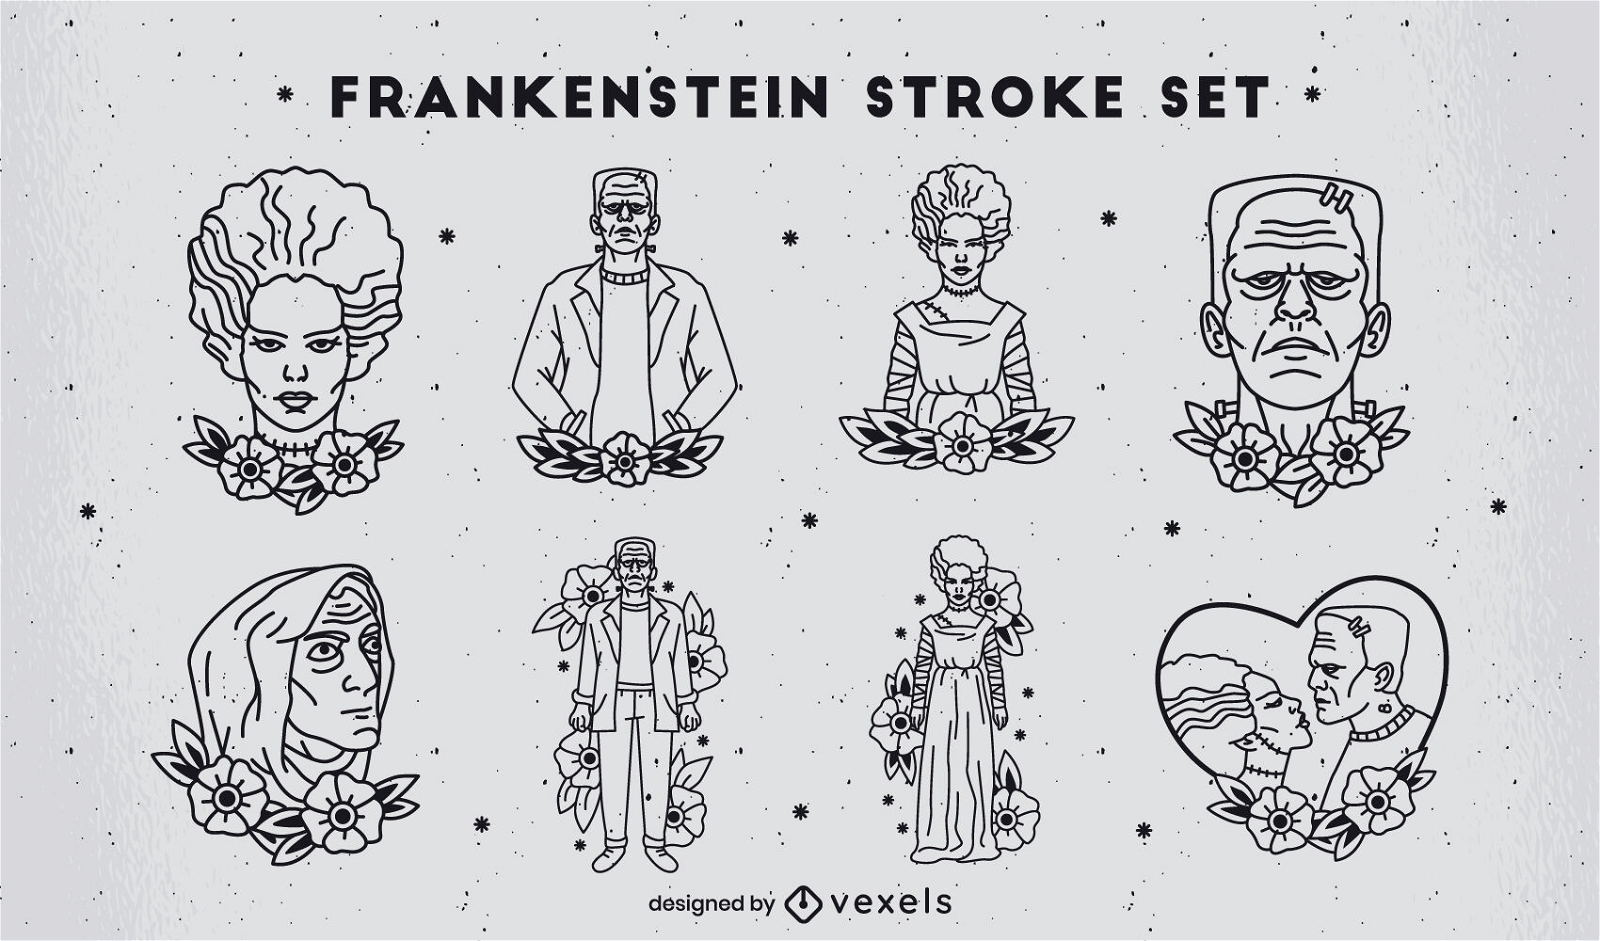 Zeichensatz im Frankenstein-Strich-T?towierungsstil